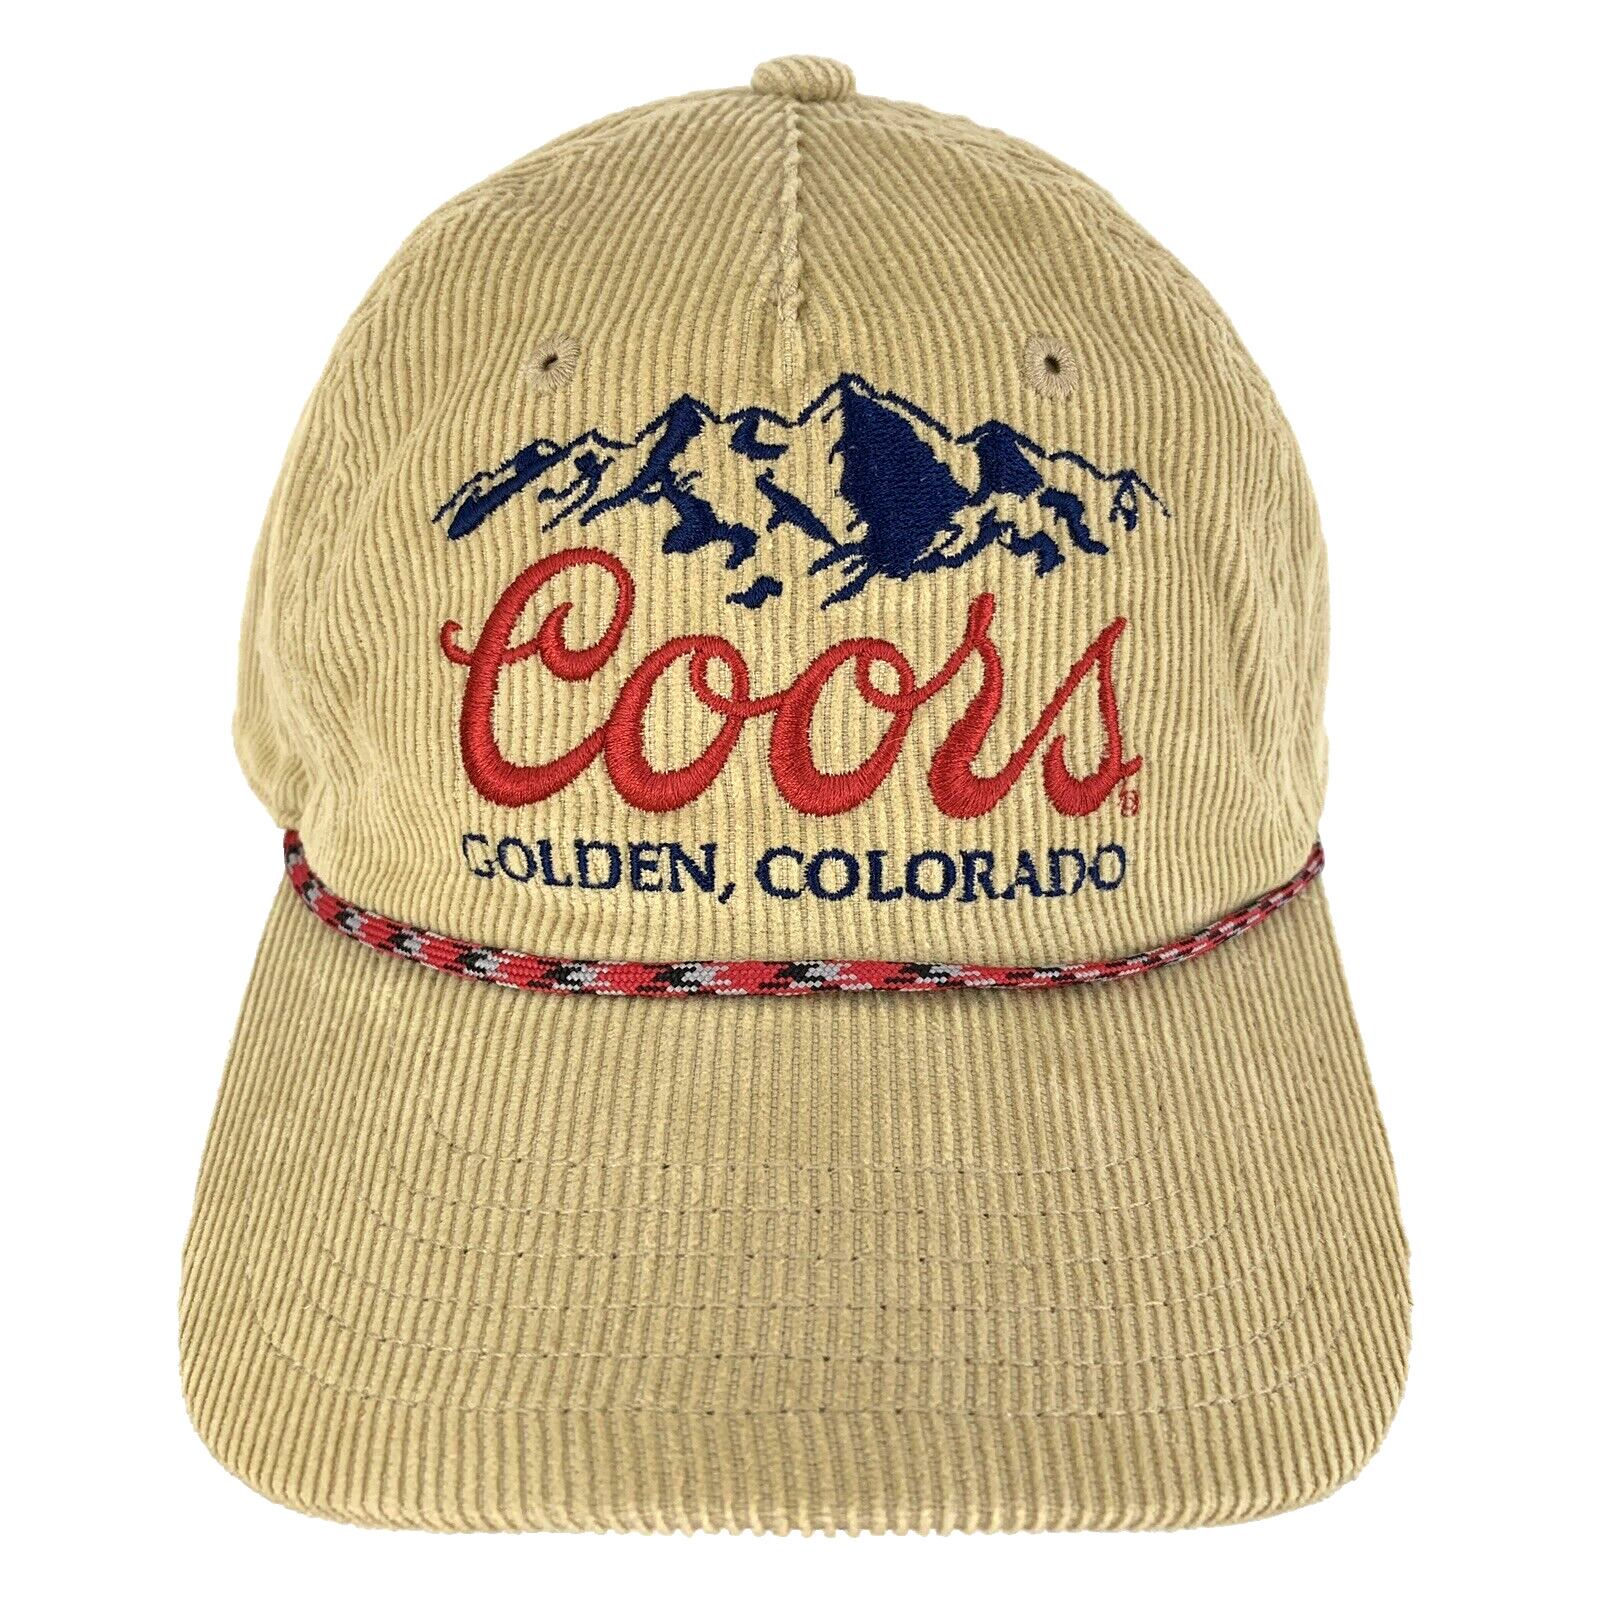 Coors Beer Corduroy Hat Golden Colorado Rope Retro Snapback Trucker Baseball Cap